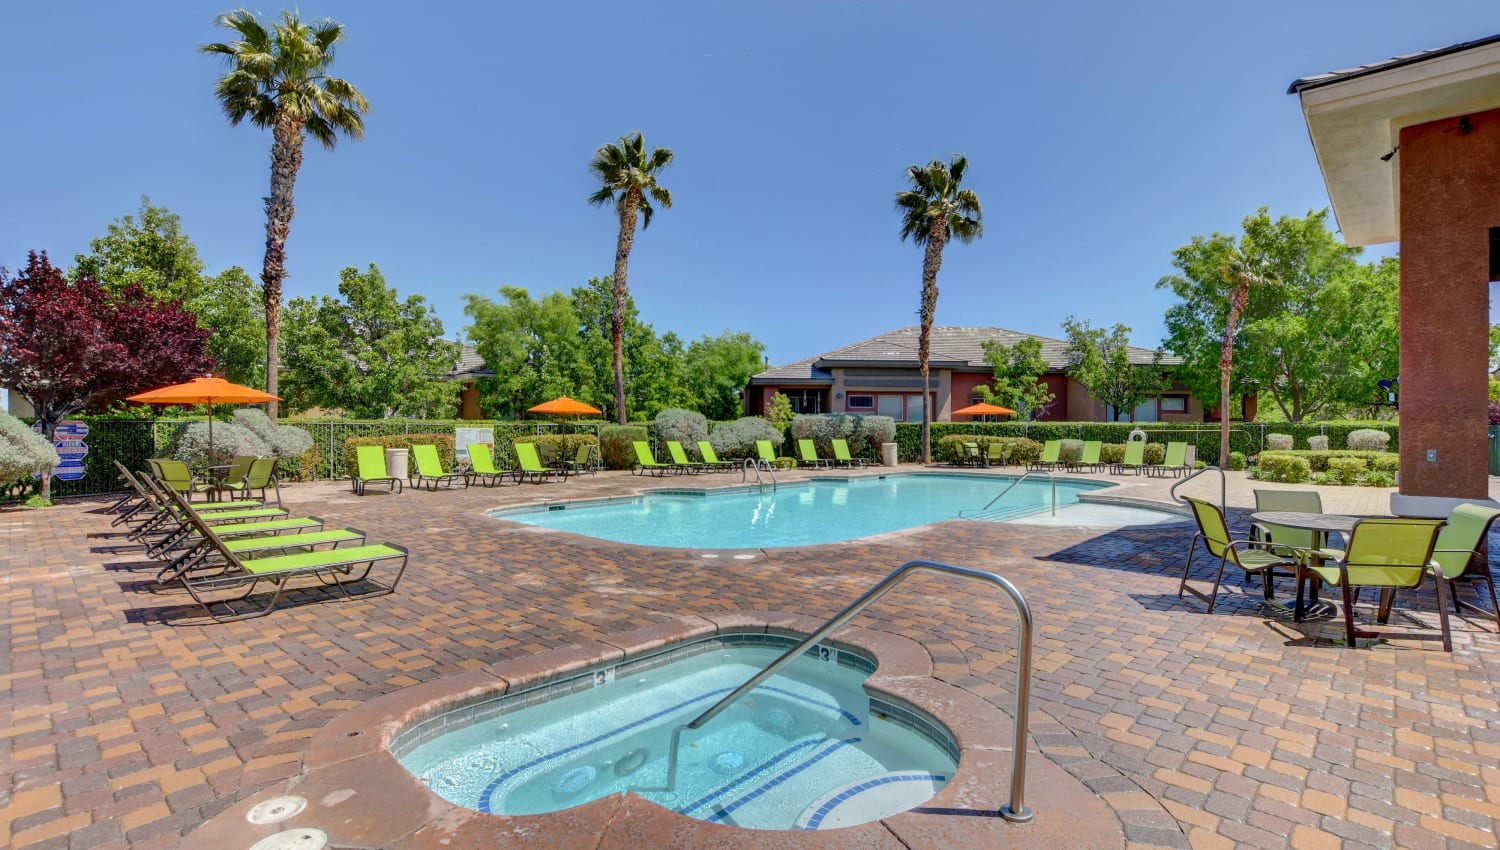 Swimming pool and spa at Canyon Villas Apartments in Las Vegas, Nevada